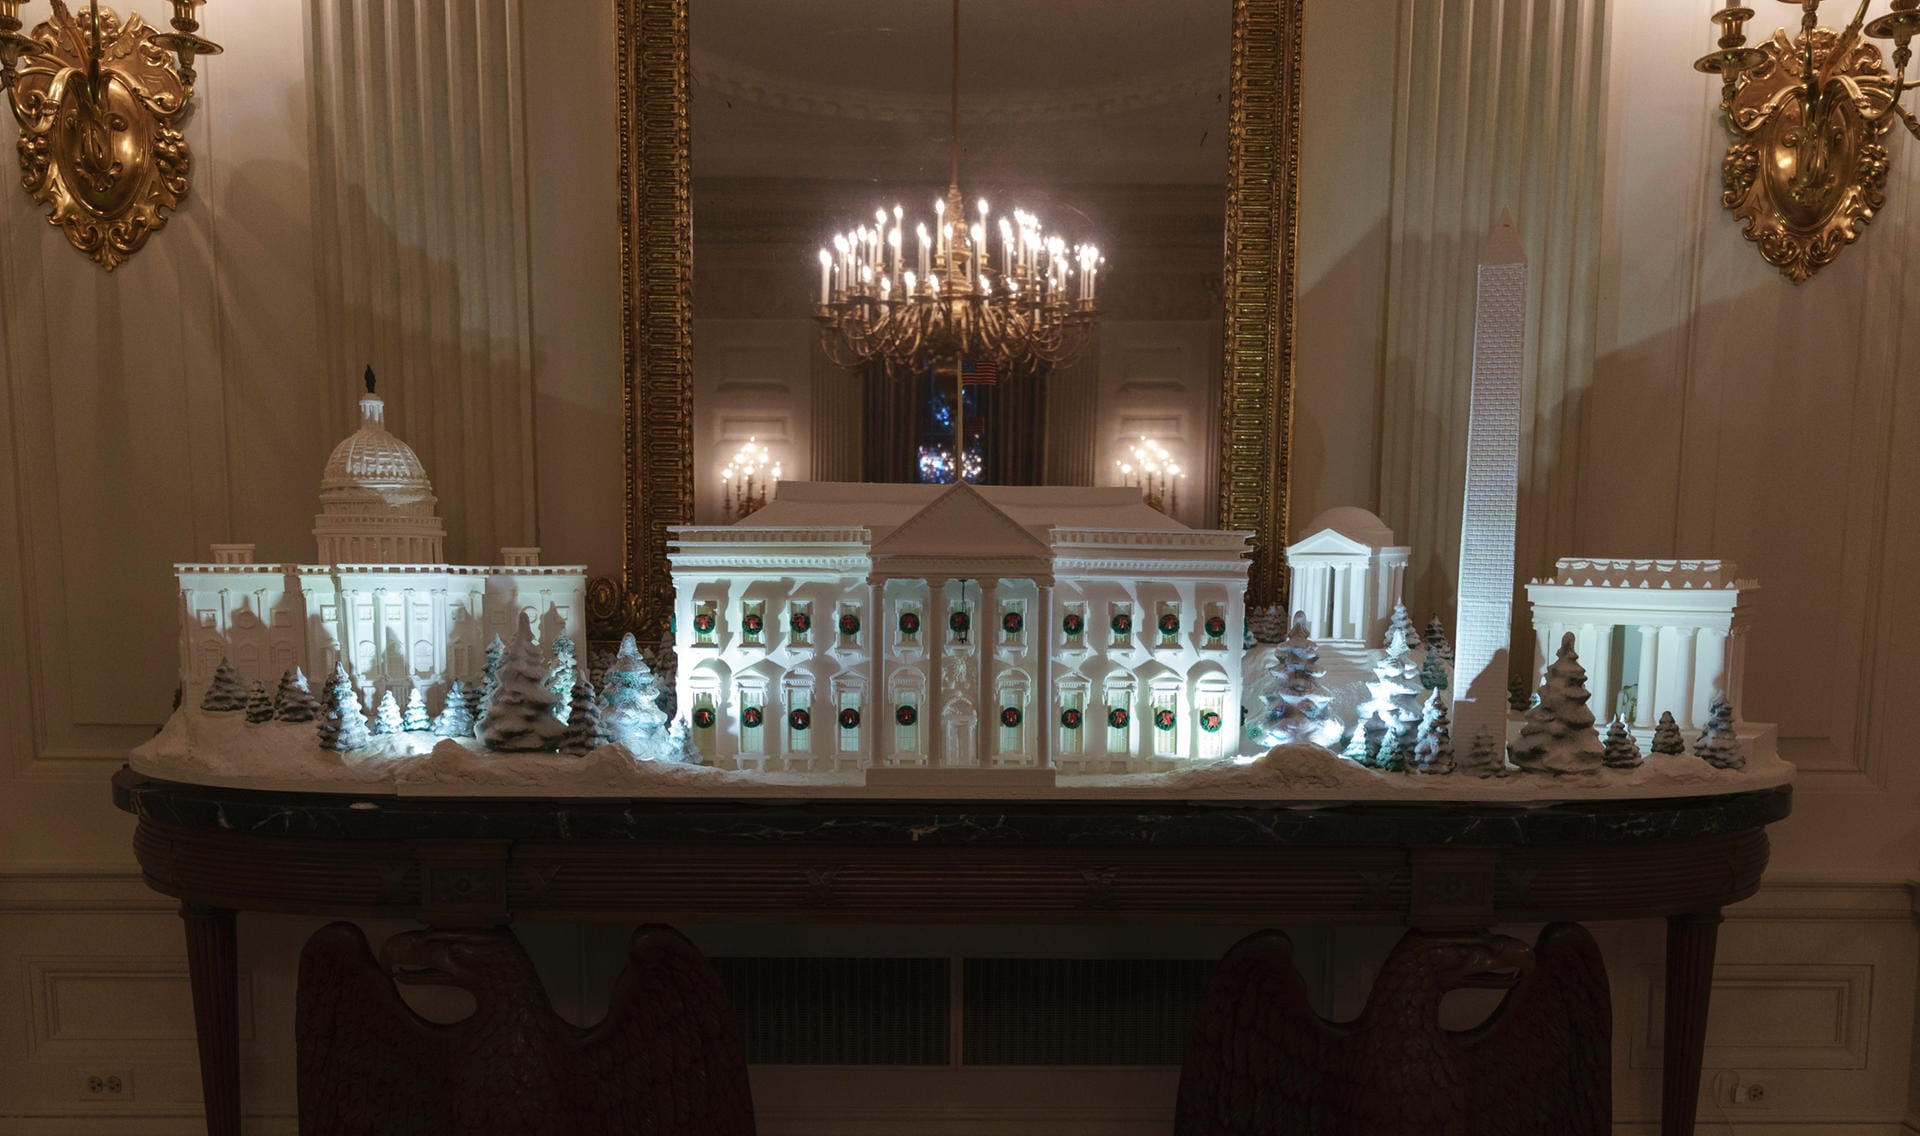 Das Lebkuchenhaus stellt die gesamte Nationalpromenade in Washington dar: Zu sehen sind das Kapitol, das Lincoln Memorial, das Jefferson Memorial, das Washington Memorial und – im Zentrum – das Weiße Haus.